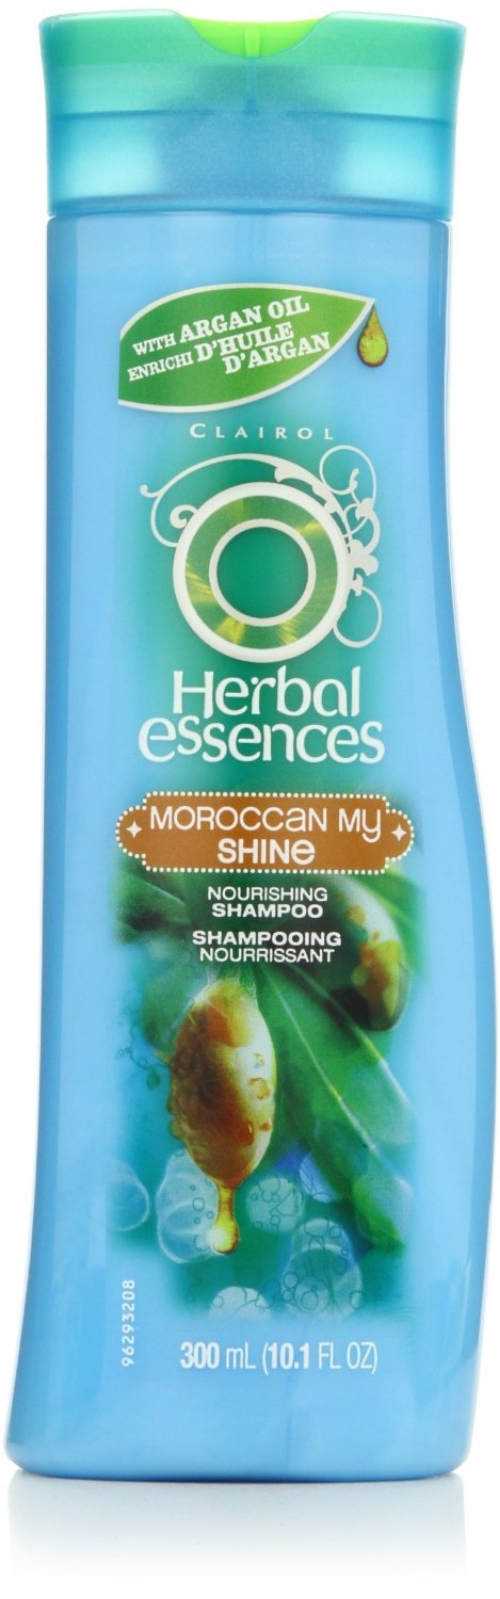 Herbal Essences Moroccan My Shine Nourishing Shampoo, 10.1 fl oz